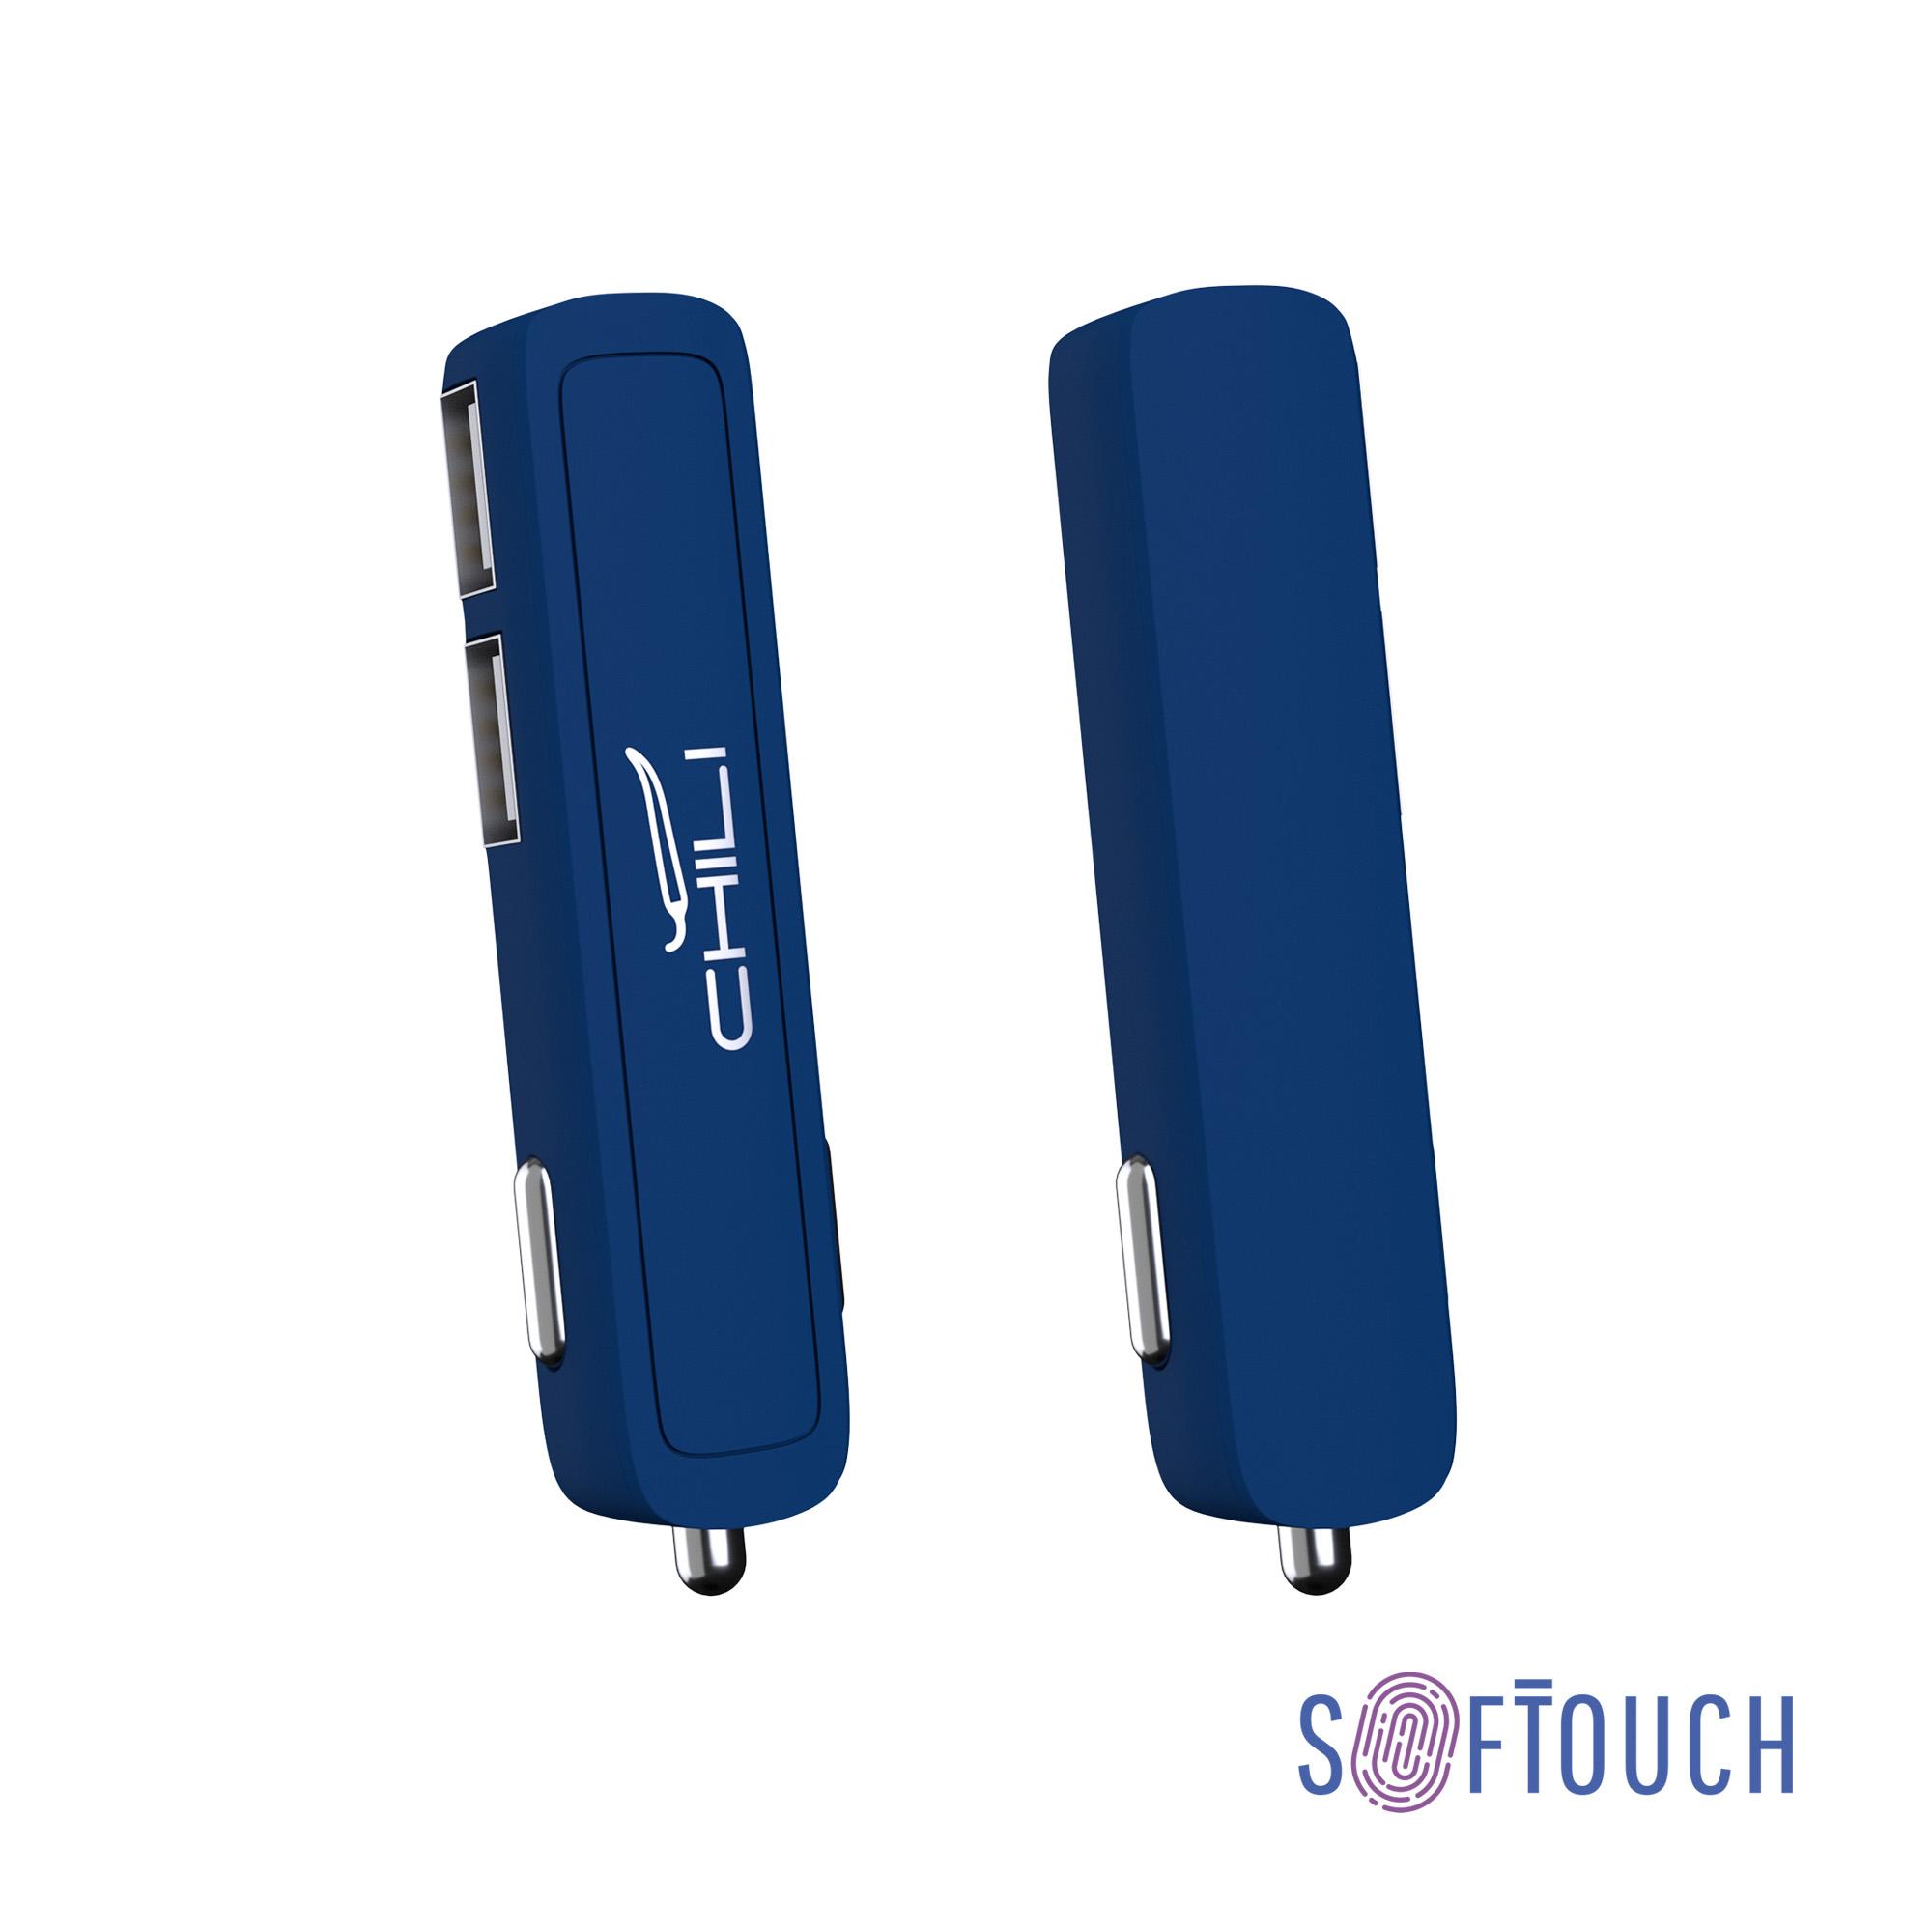 Автомобильное зарядное устройство "Slam" с 2-мя разъёмами USB, покрытие soft touch, цвет темно-синий